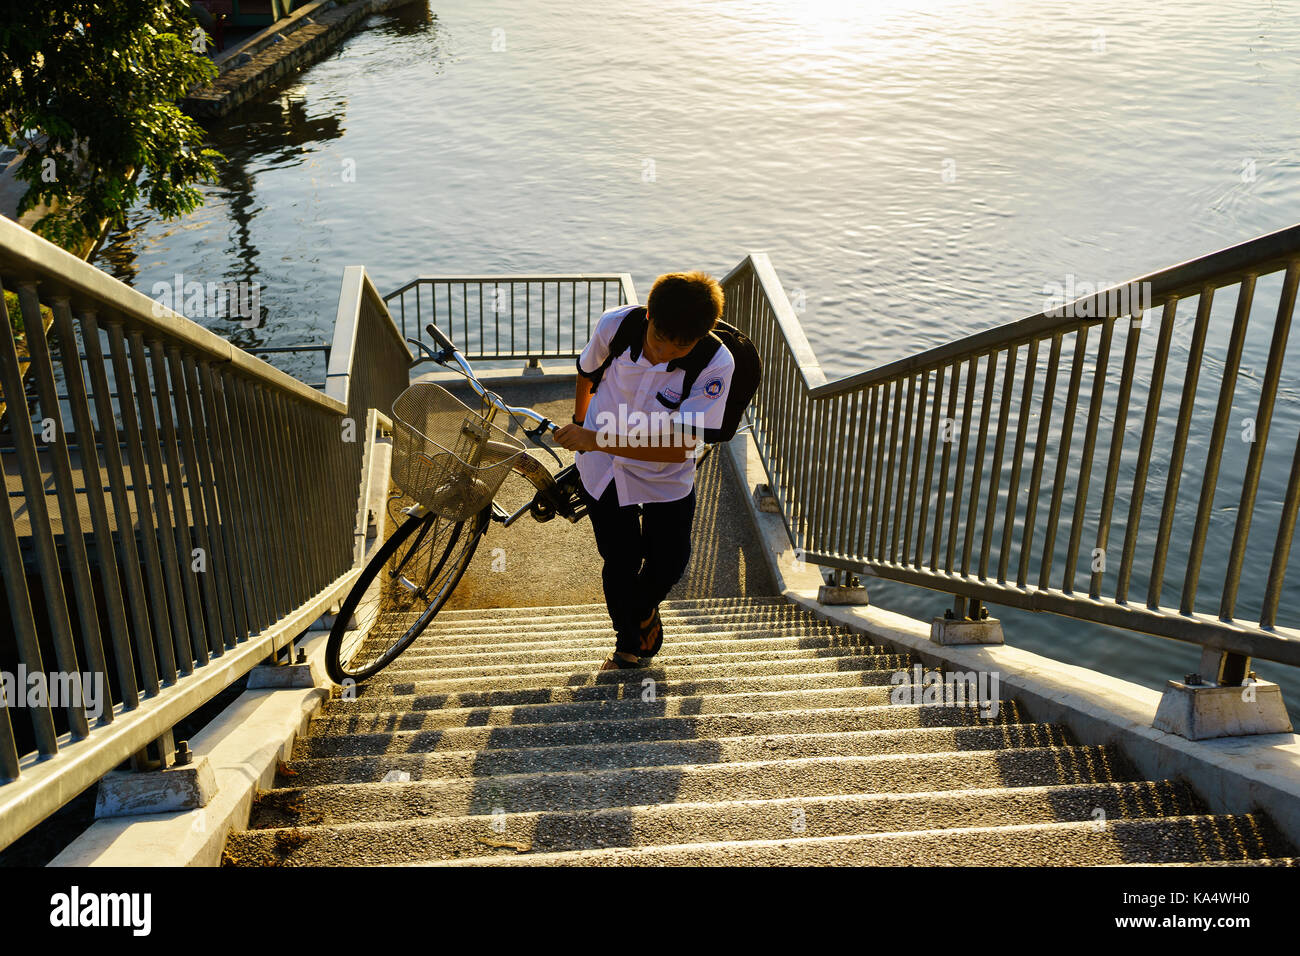 Nov 7, 2014 - Ho Chi Minh City, Vietnam: ein Junge mit seinem Fahrrad auf der Fußgängerbrücke Nummer 5, Vo Van Kiet Straße, Bezirk 8. Stockfoto